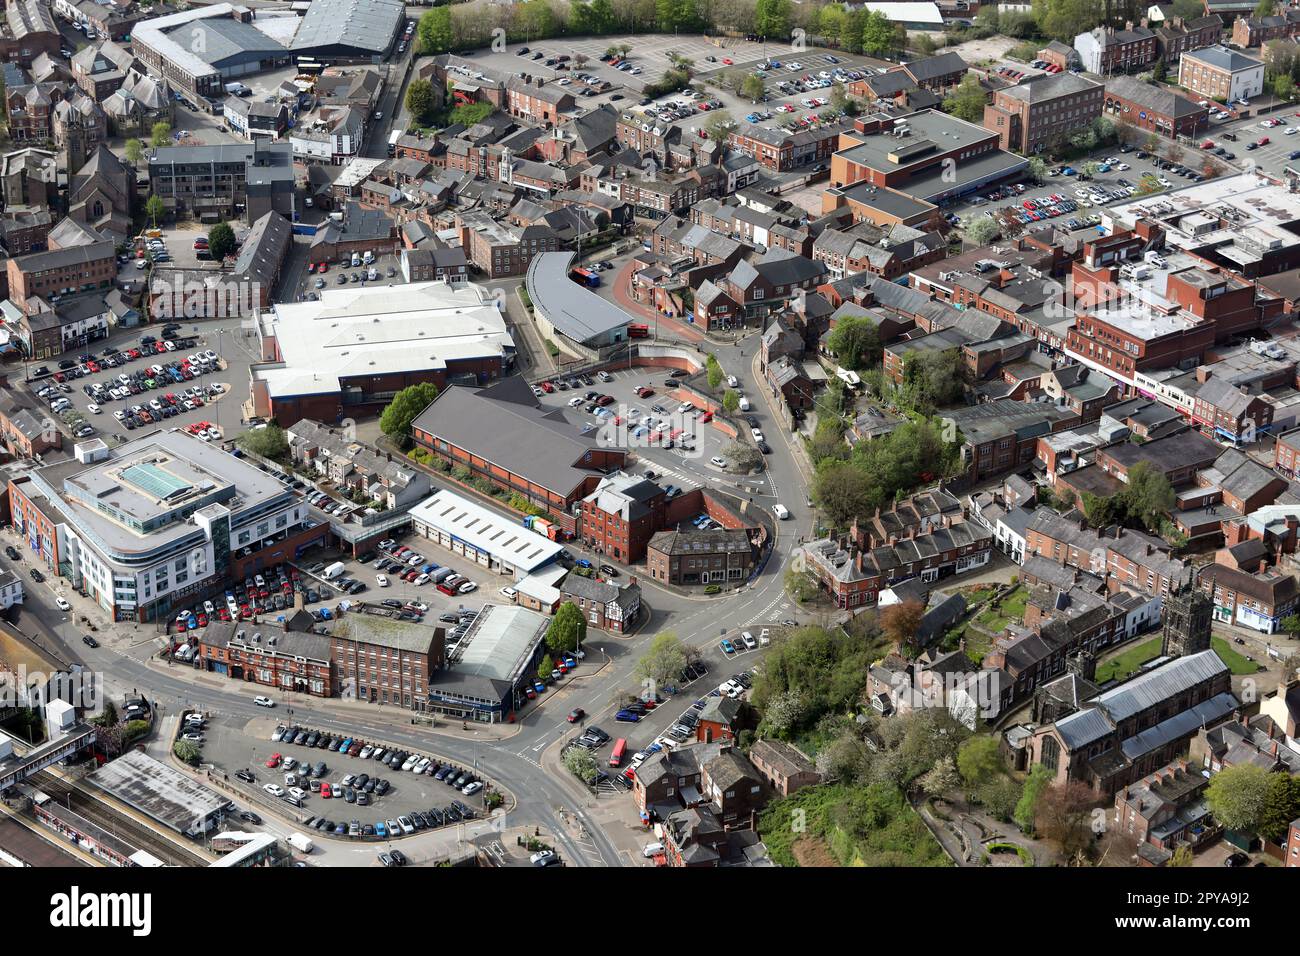 Luftaufnahme des Stadtzentrums von Macclesfield mit dem Aldi Supermarkt, Silkworks Einzelhandelsgebäude, dem Queens Hotel, dem Health Hub und dem Busbahnhof Stockfoto